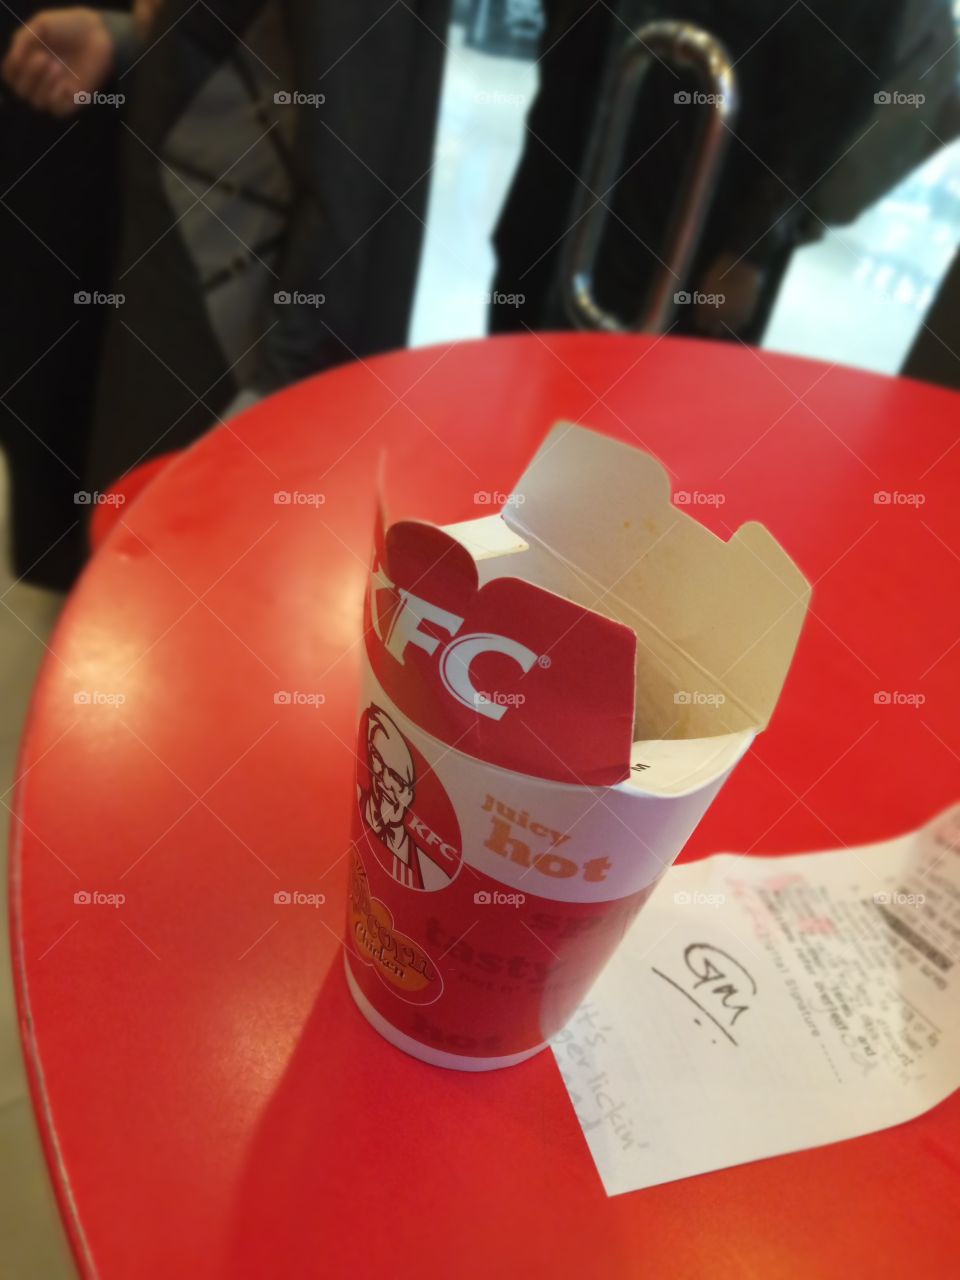 KFC popcorn